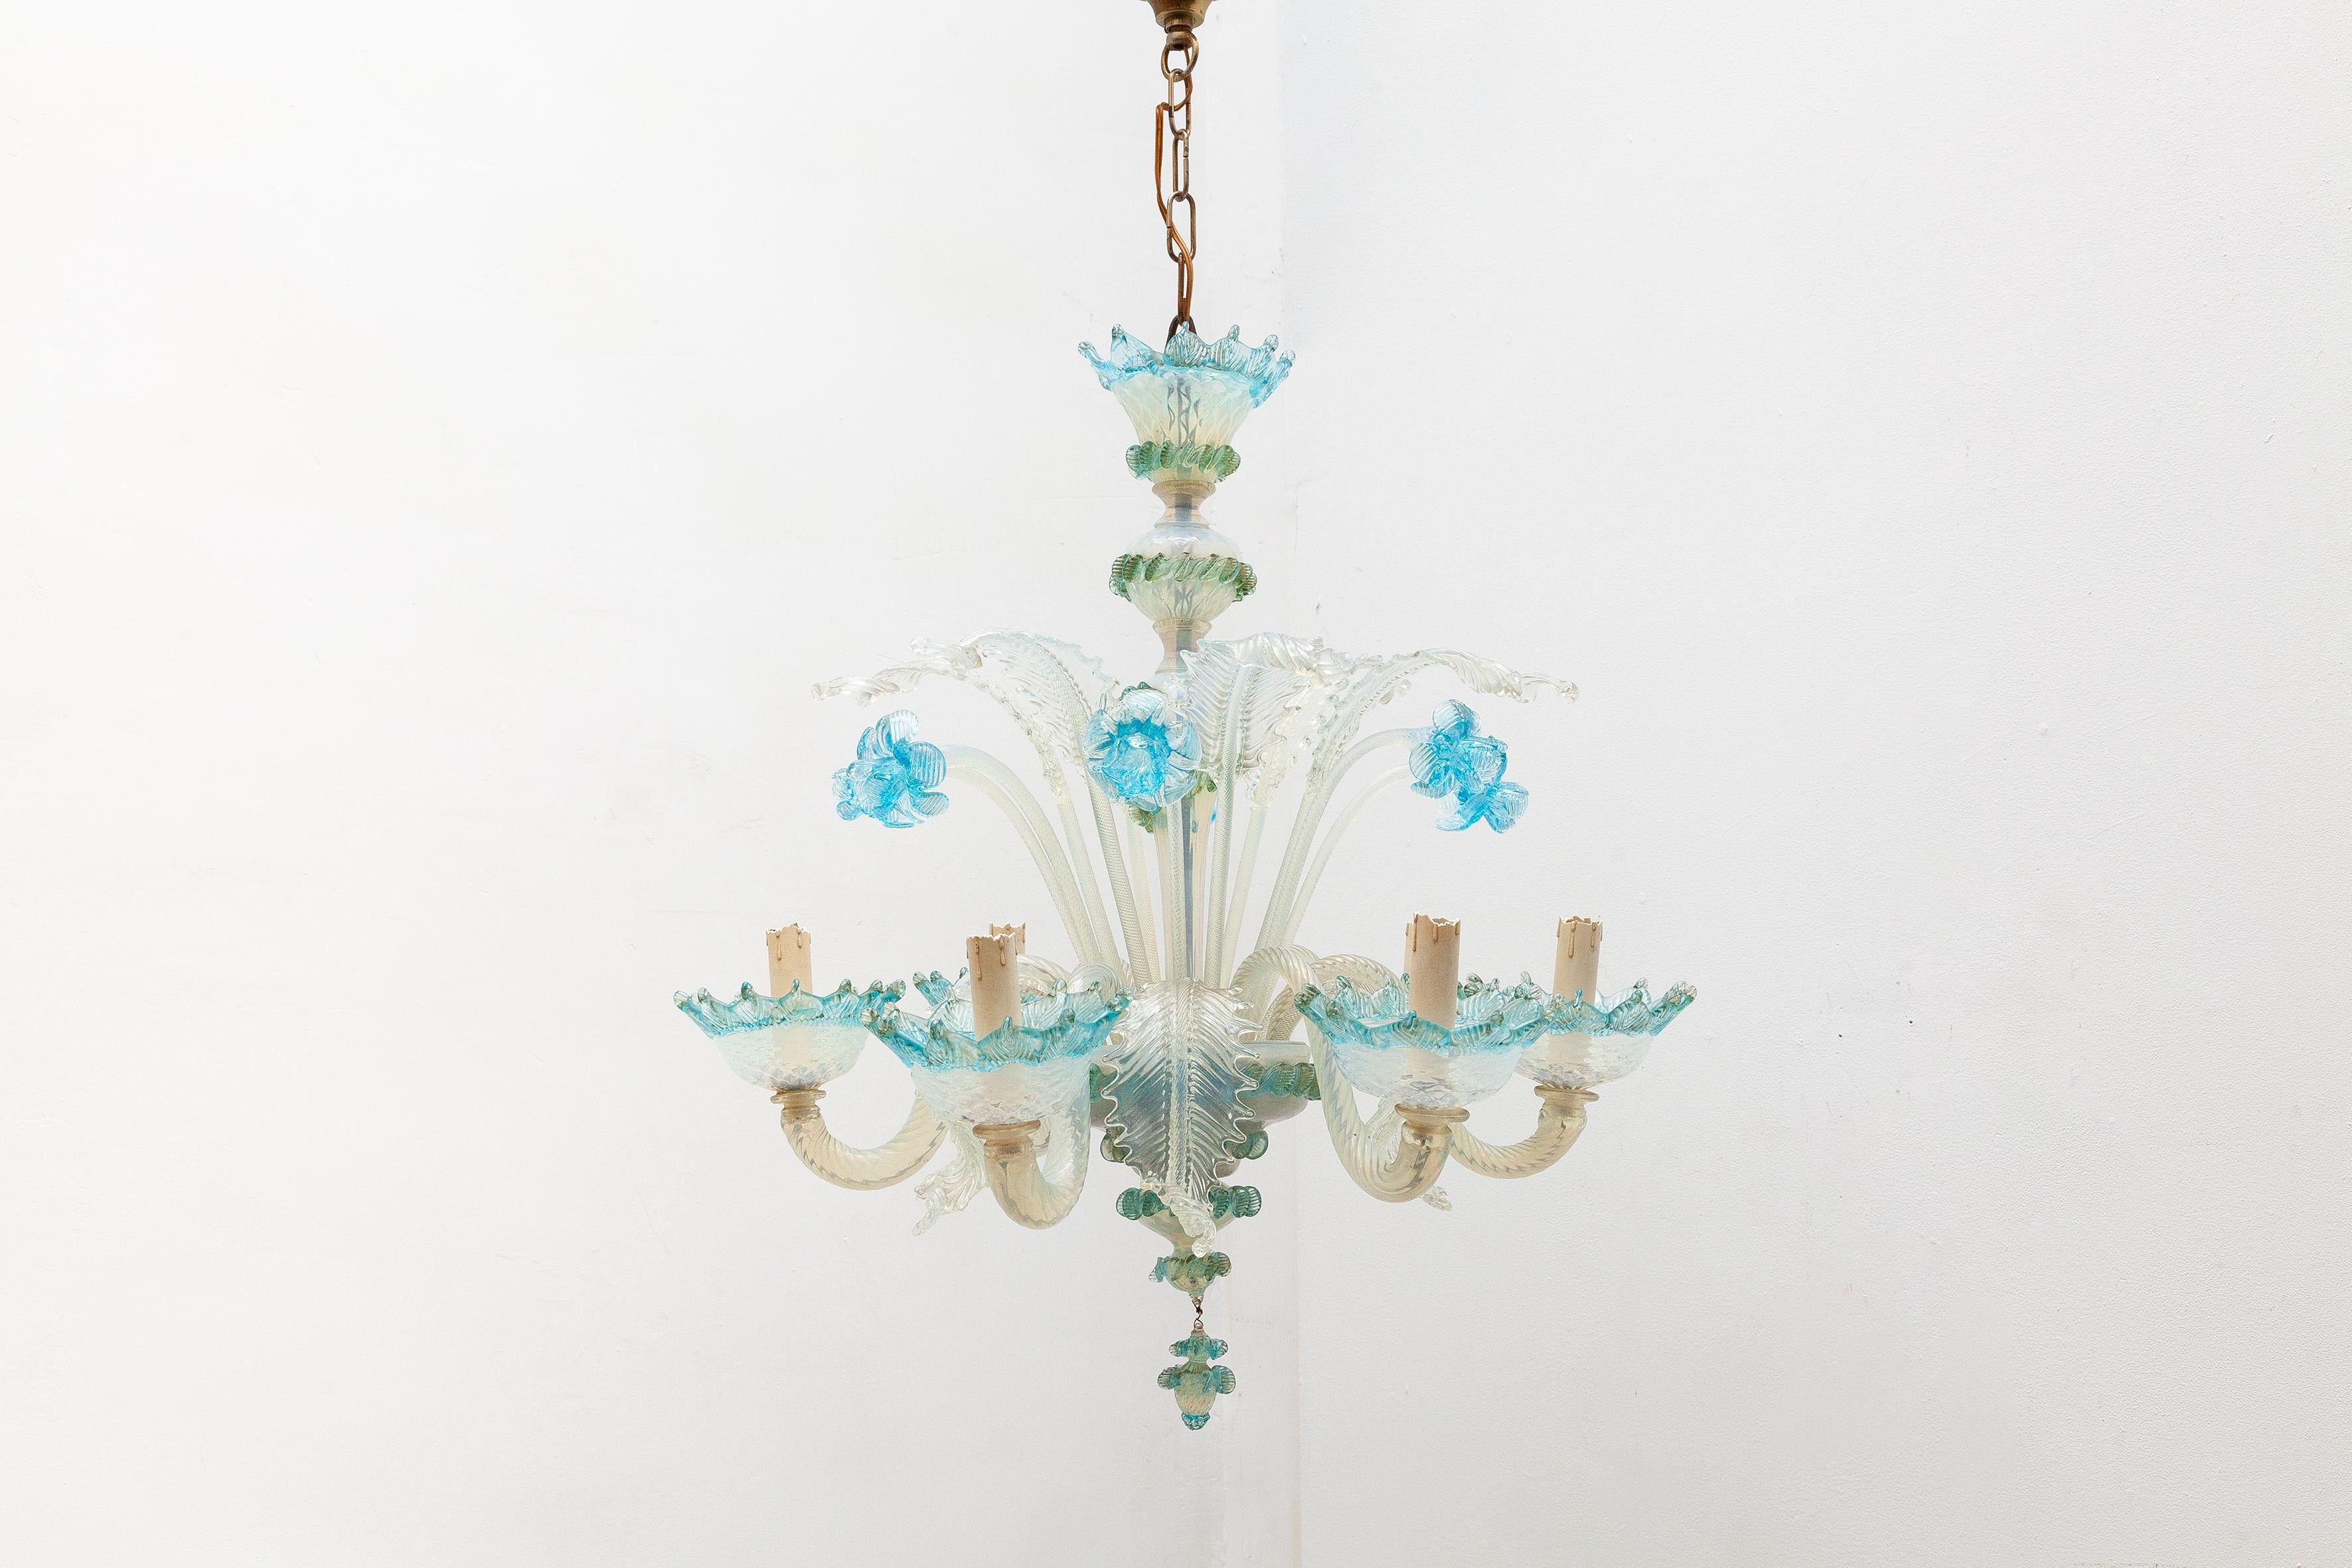 Lustre en verre de Murano vénitien présentant un design de fleurs en verre bleu et de feuilles en verre laiteux. Éclairé par 6 ampoules.

Dimensions : L.55 diamètre x 60 H cm : Longueur de la chaîne : 35 H cm.